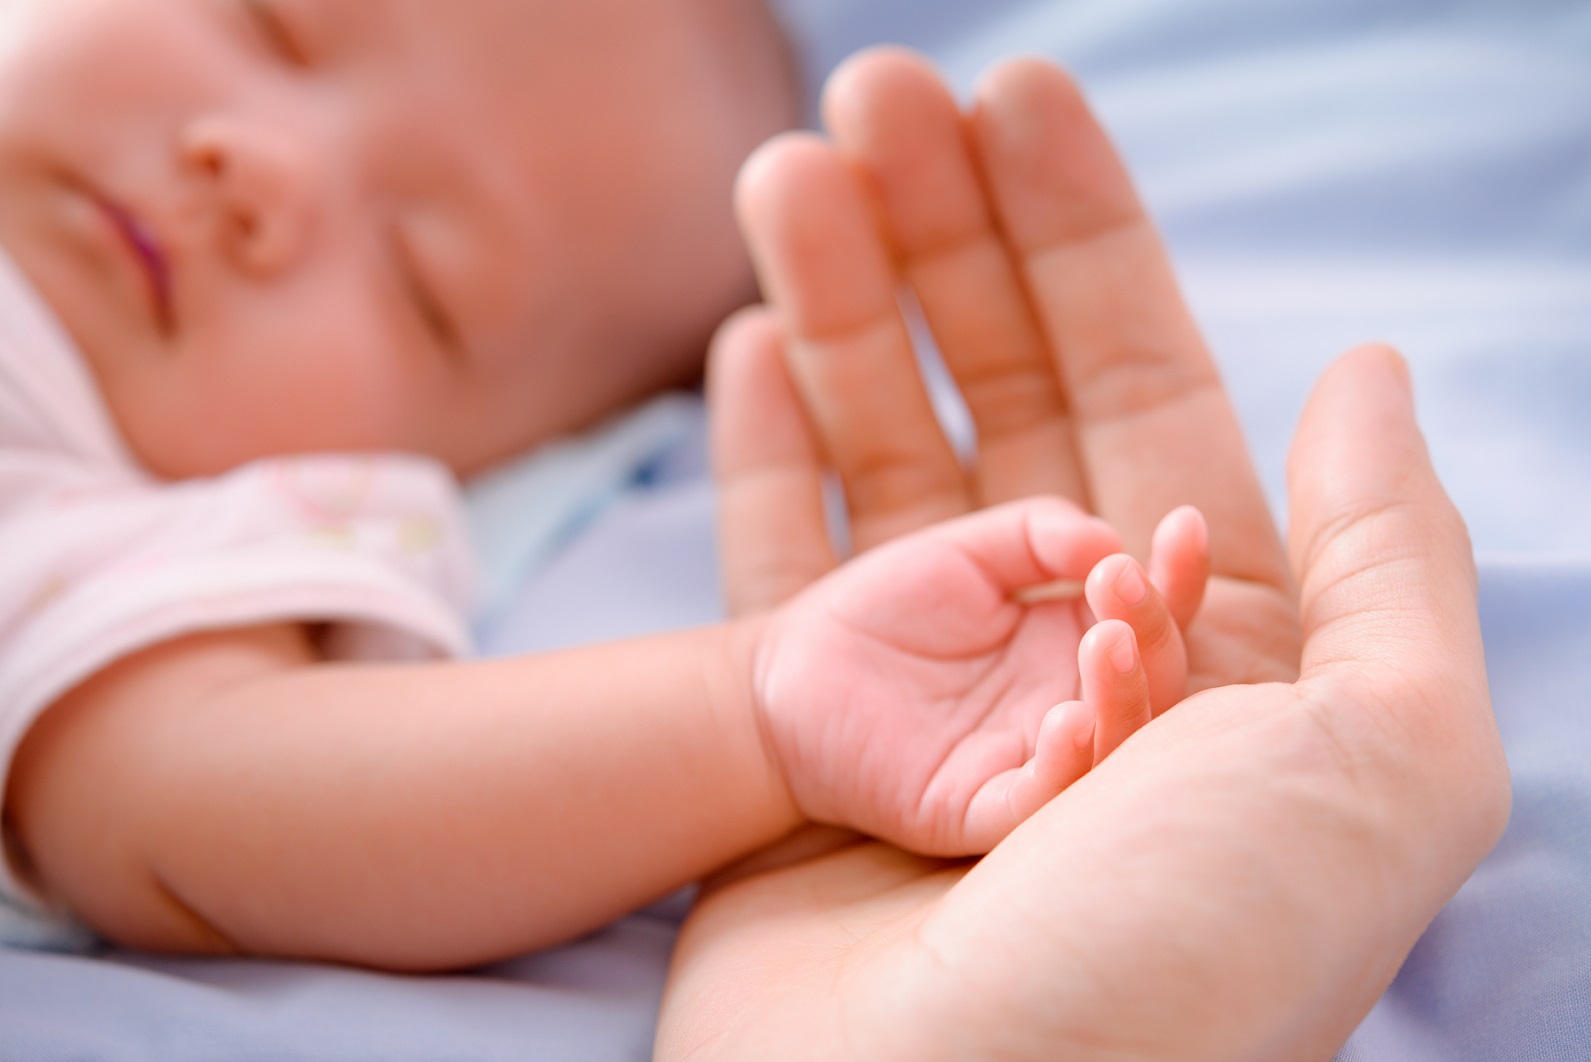 La mortalité à la naissance et dans le premier mois de vie a baissé, même dans les pays où elle était déjà faible. © Bohbeh, Shutterstock